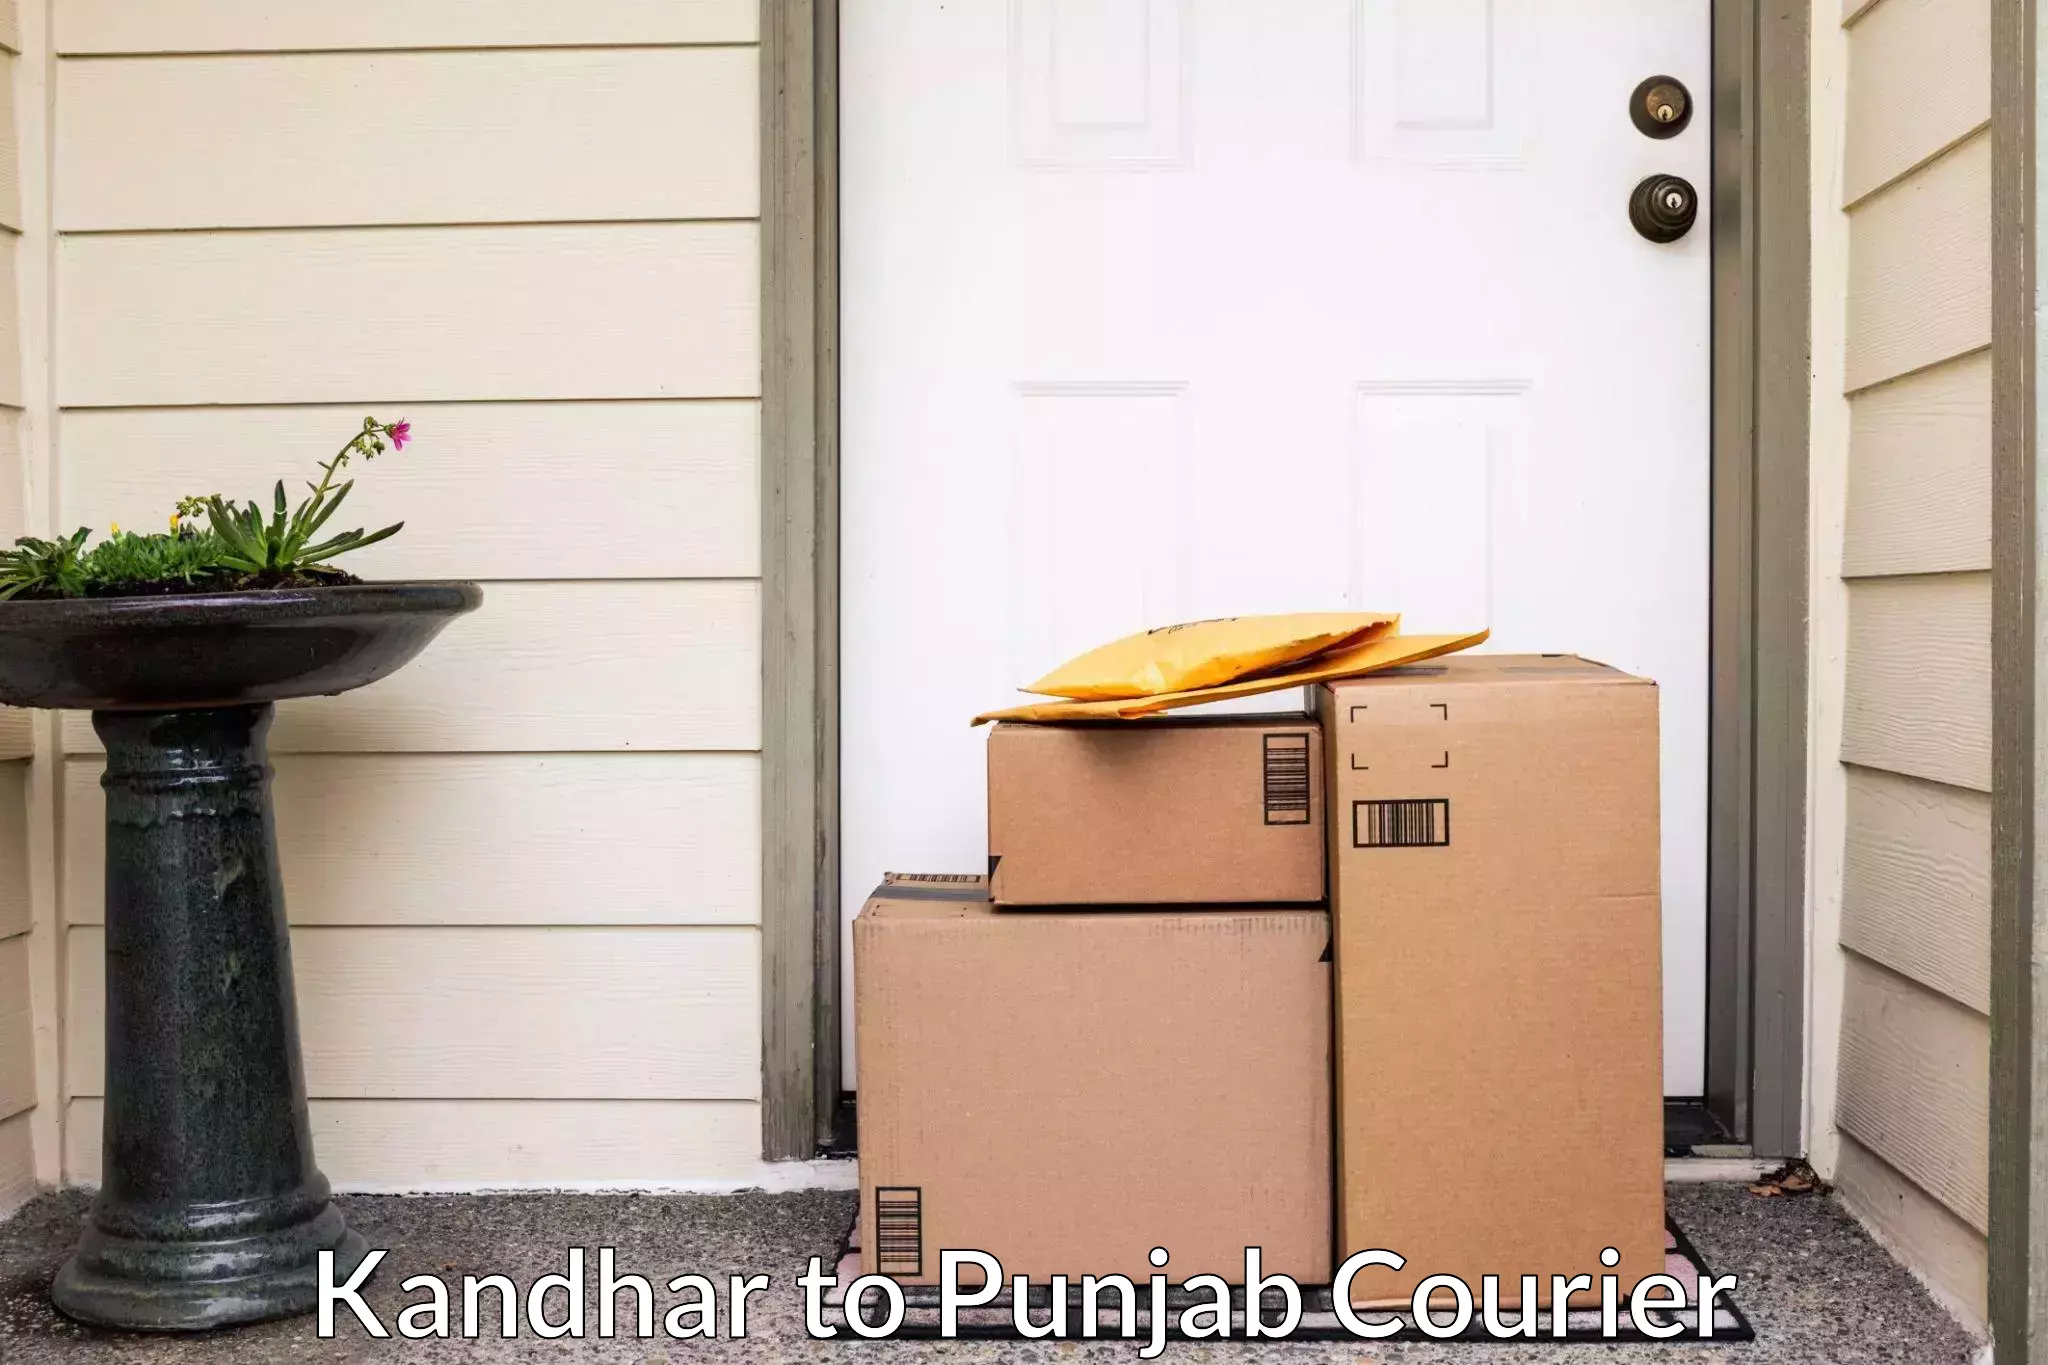 Professional furniture movers Kandhar to Punjab